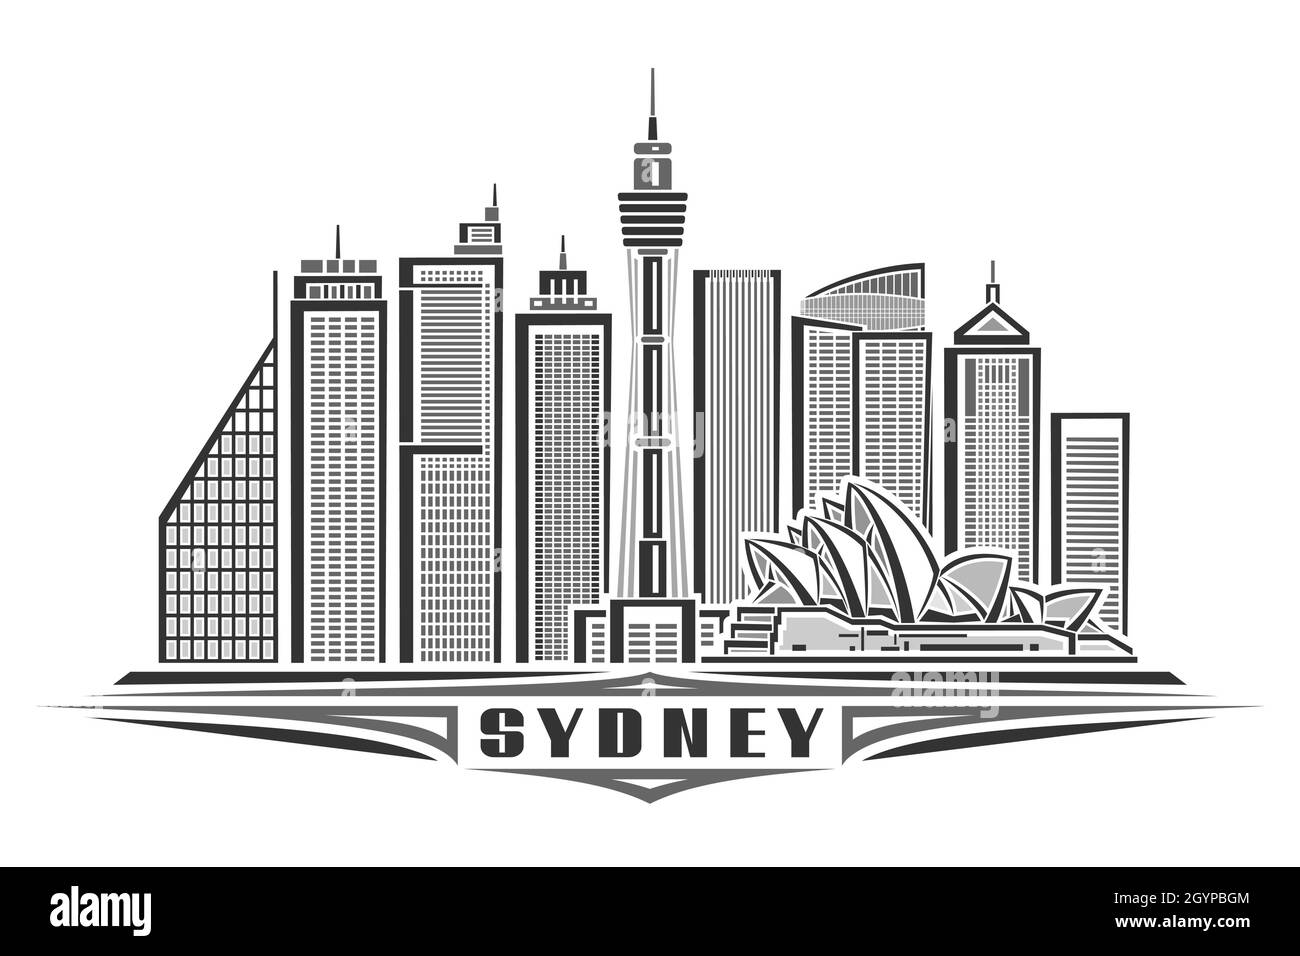 Illustration vectorielle de Sydney, affiche horizontale monochrome avec design linéaire célèbre ville de sydney, concept d'art urbain avec décoration unique Illustration de Vecteur